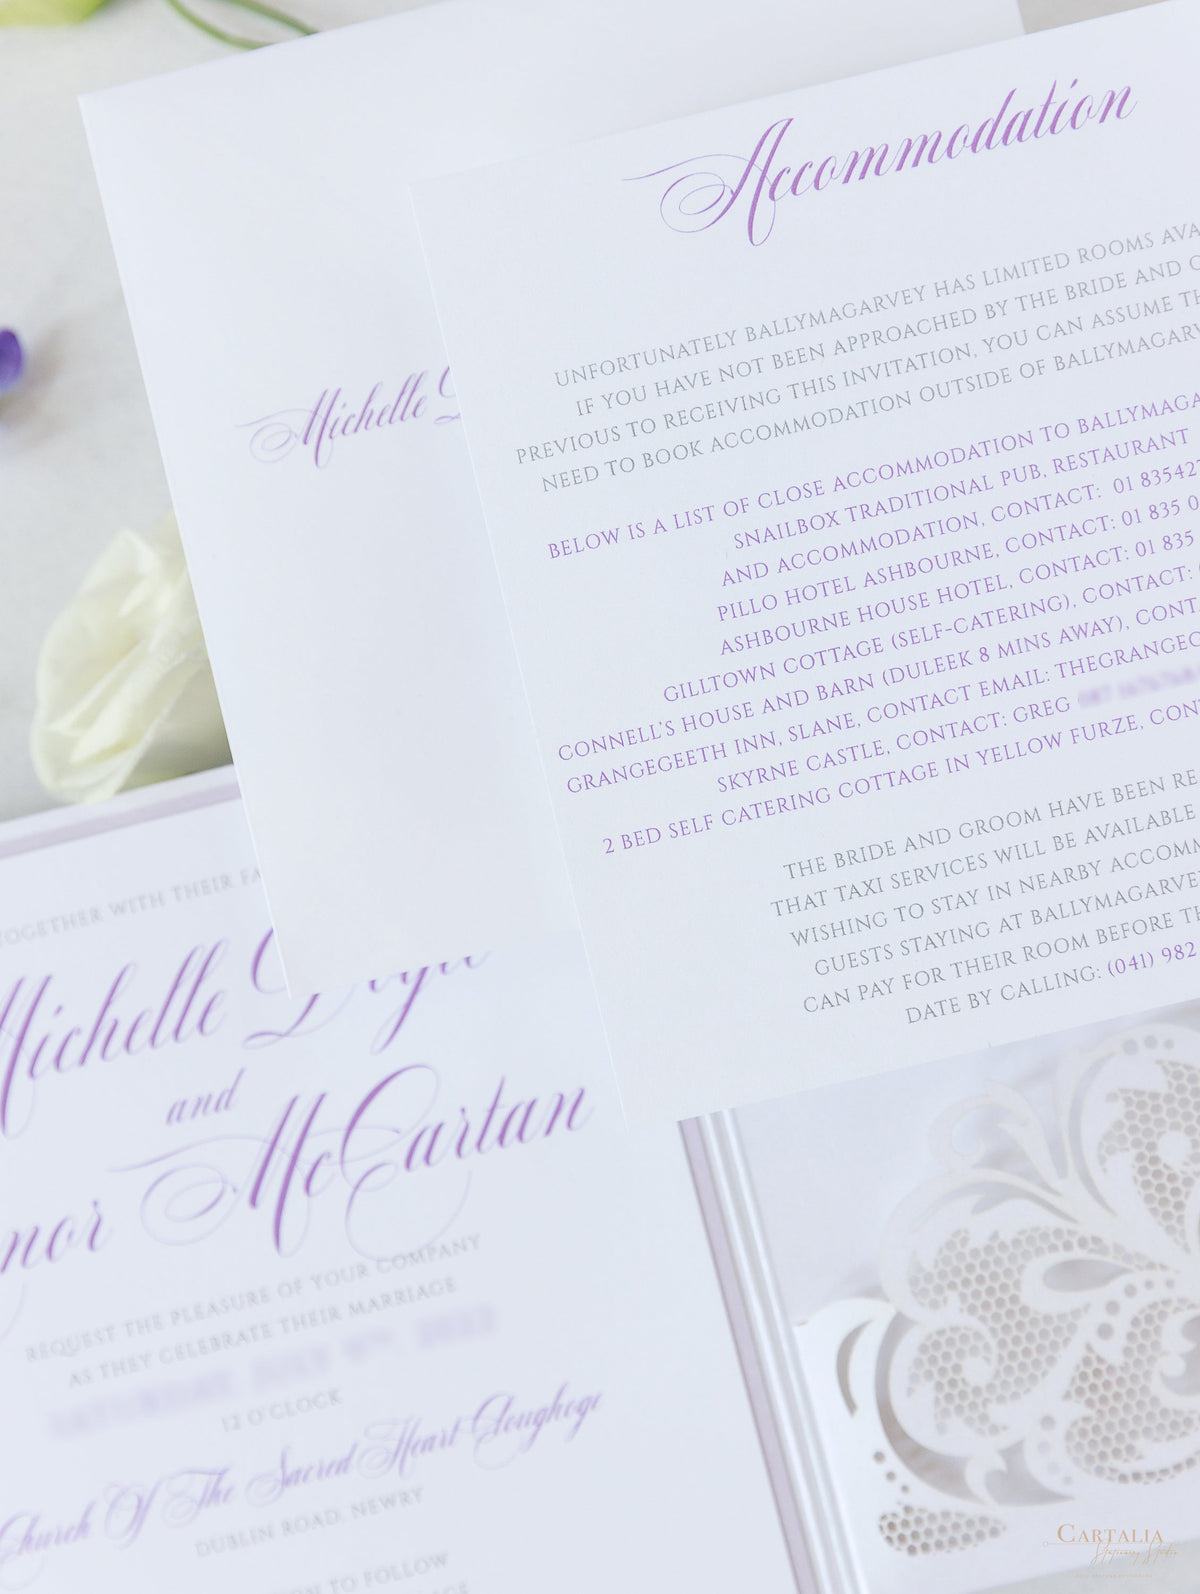 Blanc & Lilac Laser Cut Lace Pocketfold Wedding Invitation Suite avec 3 niveaux: Informations invitées et voyages et carte RSVP